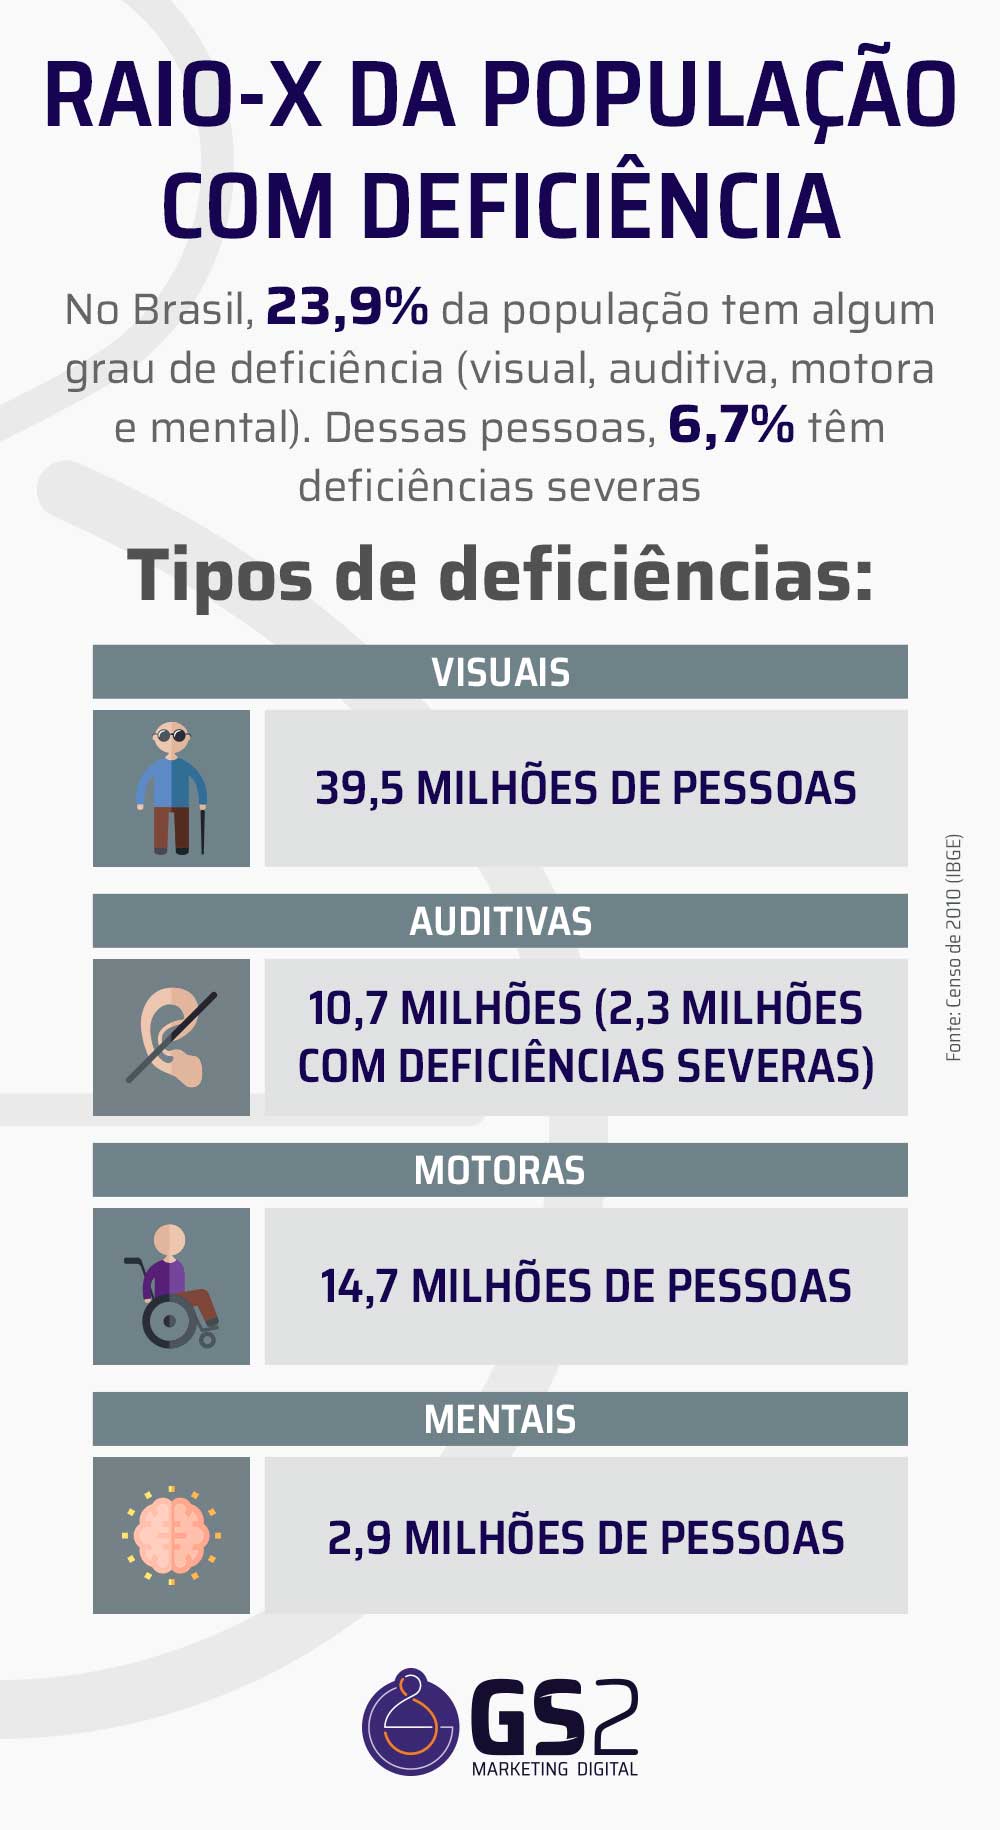 Raio-X da população com deficiência  No Brasil, 23,9% da população tem algum grau de deficiência (visual, auditiva, motora e mental) Dessas pessoas, 6,7% têm deficiências severas  Tipos de deficiências Visuais: 39,5 milhões de pessoas Auditivas: 10,7 milhões (2,3 milhões com deficiências severas) Motoras: 14,7 milhões de pessoas Mentais: 2,9 milhões de pessoas  Fonte: Censo de 2010 (IBGE)